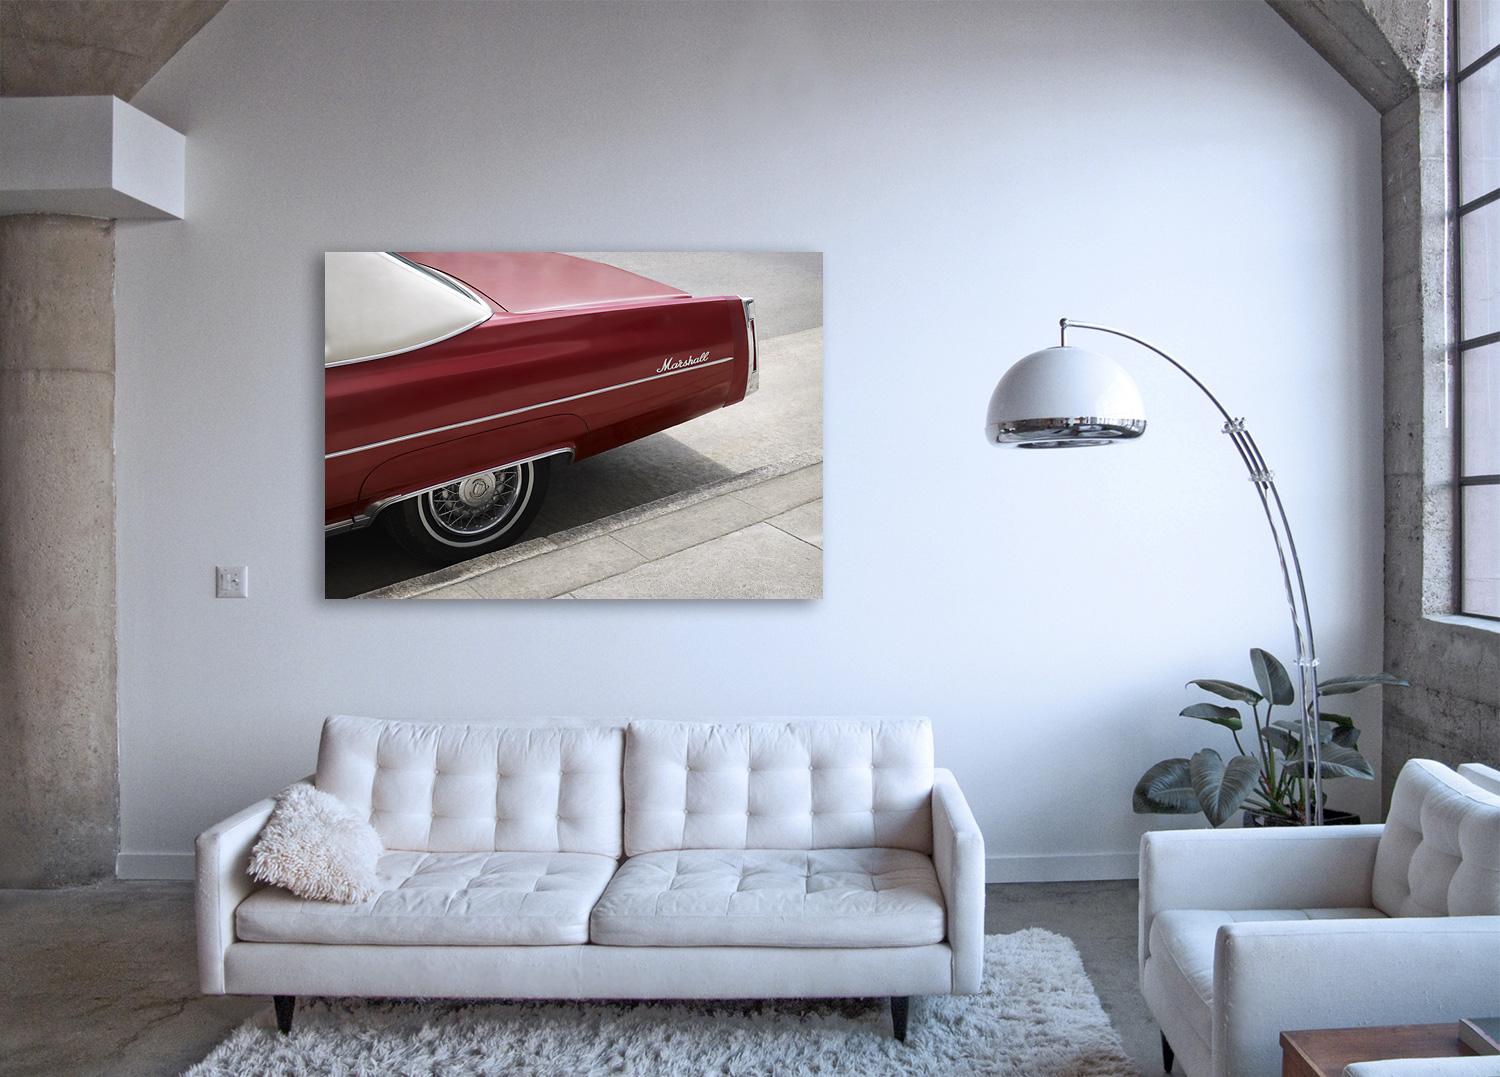 Marshall - photographie grand format de l'emblématique automobile Cadillac rouge cerise (automobile) - Conceptuel Photograph par Frank Schott